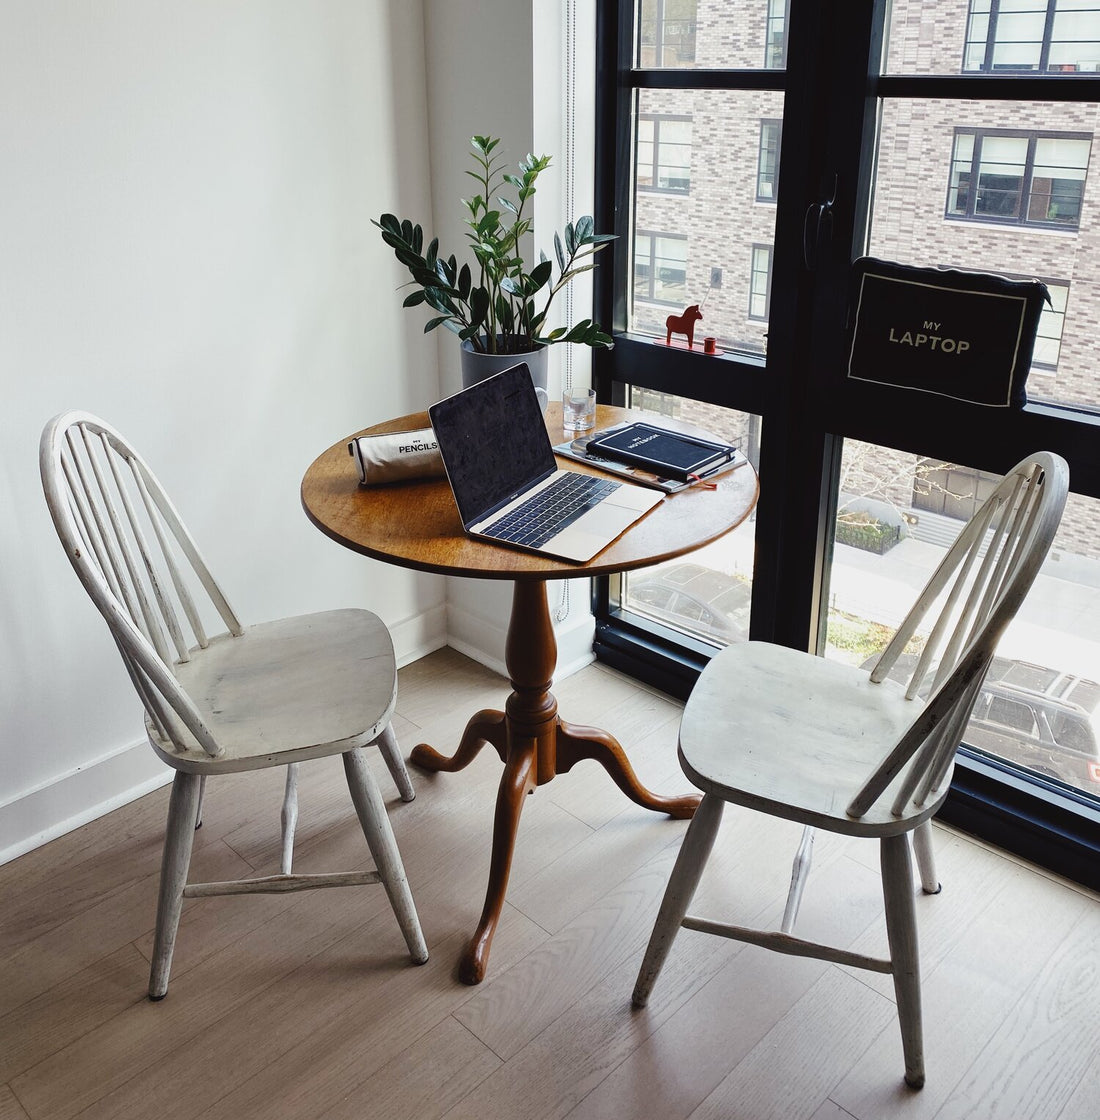 Create an Inspiring Home Office